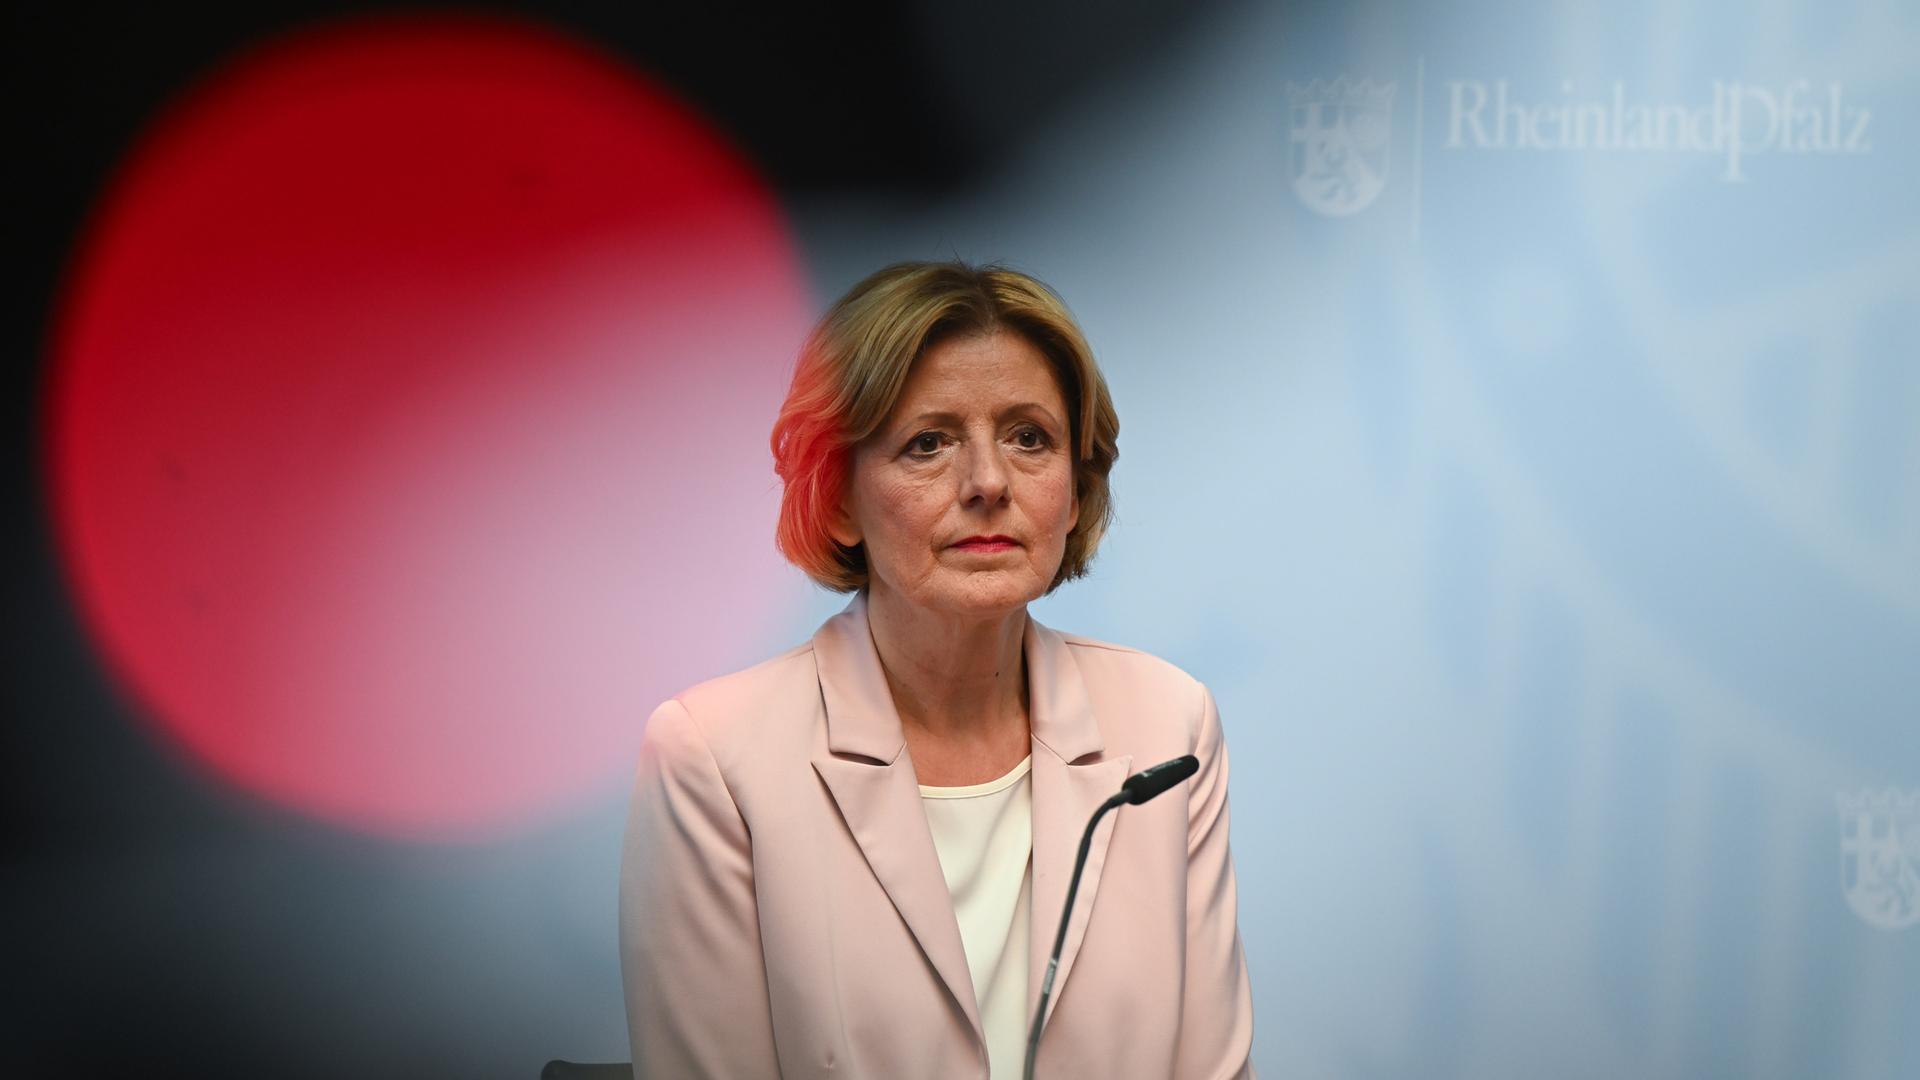 Malu Dreyer (SPD), Ministerpräsidentin von Rheinland-Pfalz, spricht in der Staatskanzlei während einer Pressekonferenz hinter dem Rotlicht einer TV-Kamera.